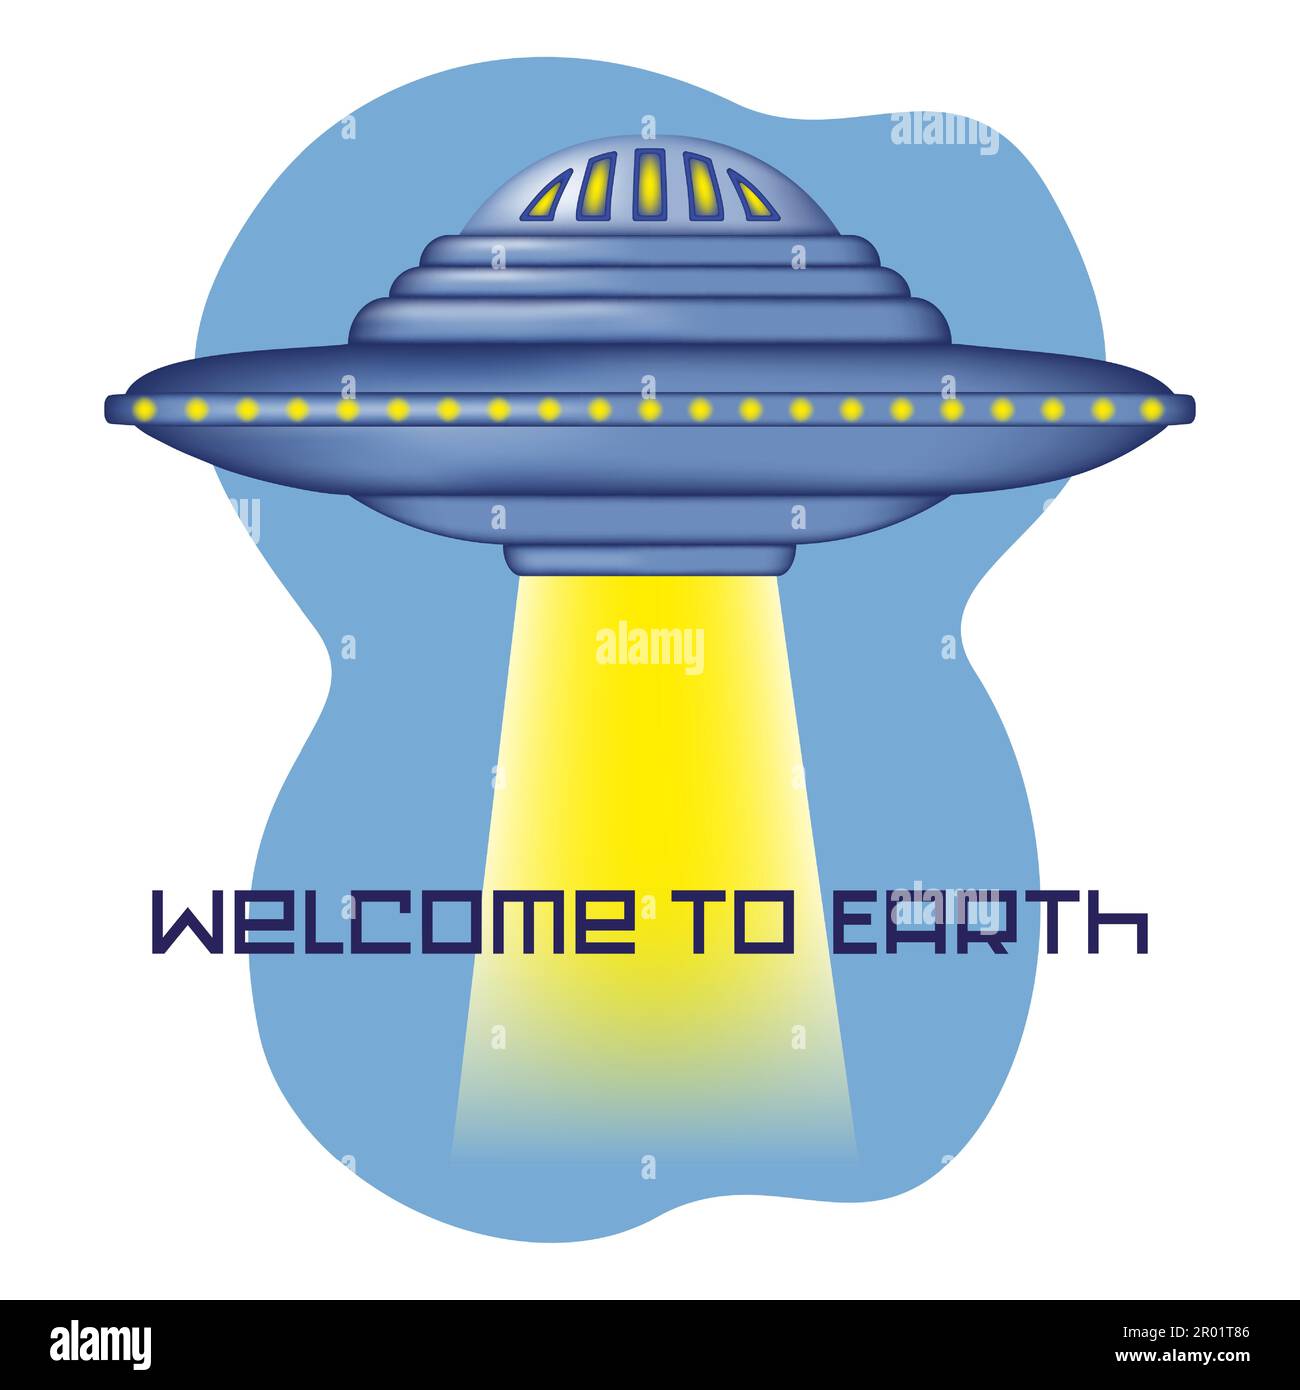 Festeggia la Giornata Mondiale dell'UFO ed estendi un invito extraterrestre con questo poster vettoriale che mostra un UFO che si solleva e splende un brigante Illustrazione Vettoriale